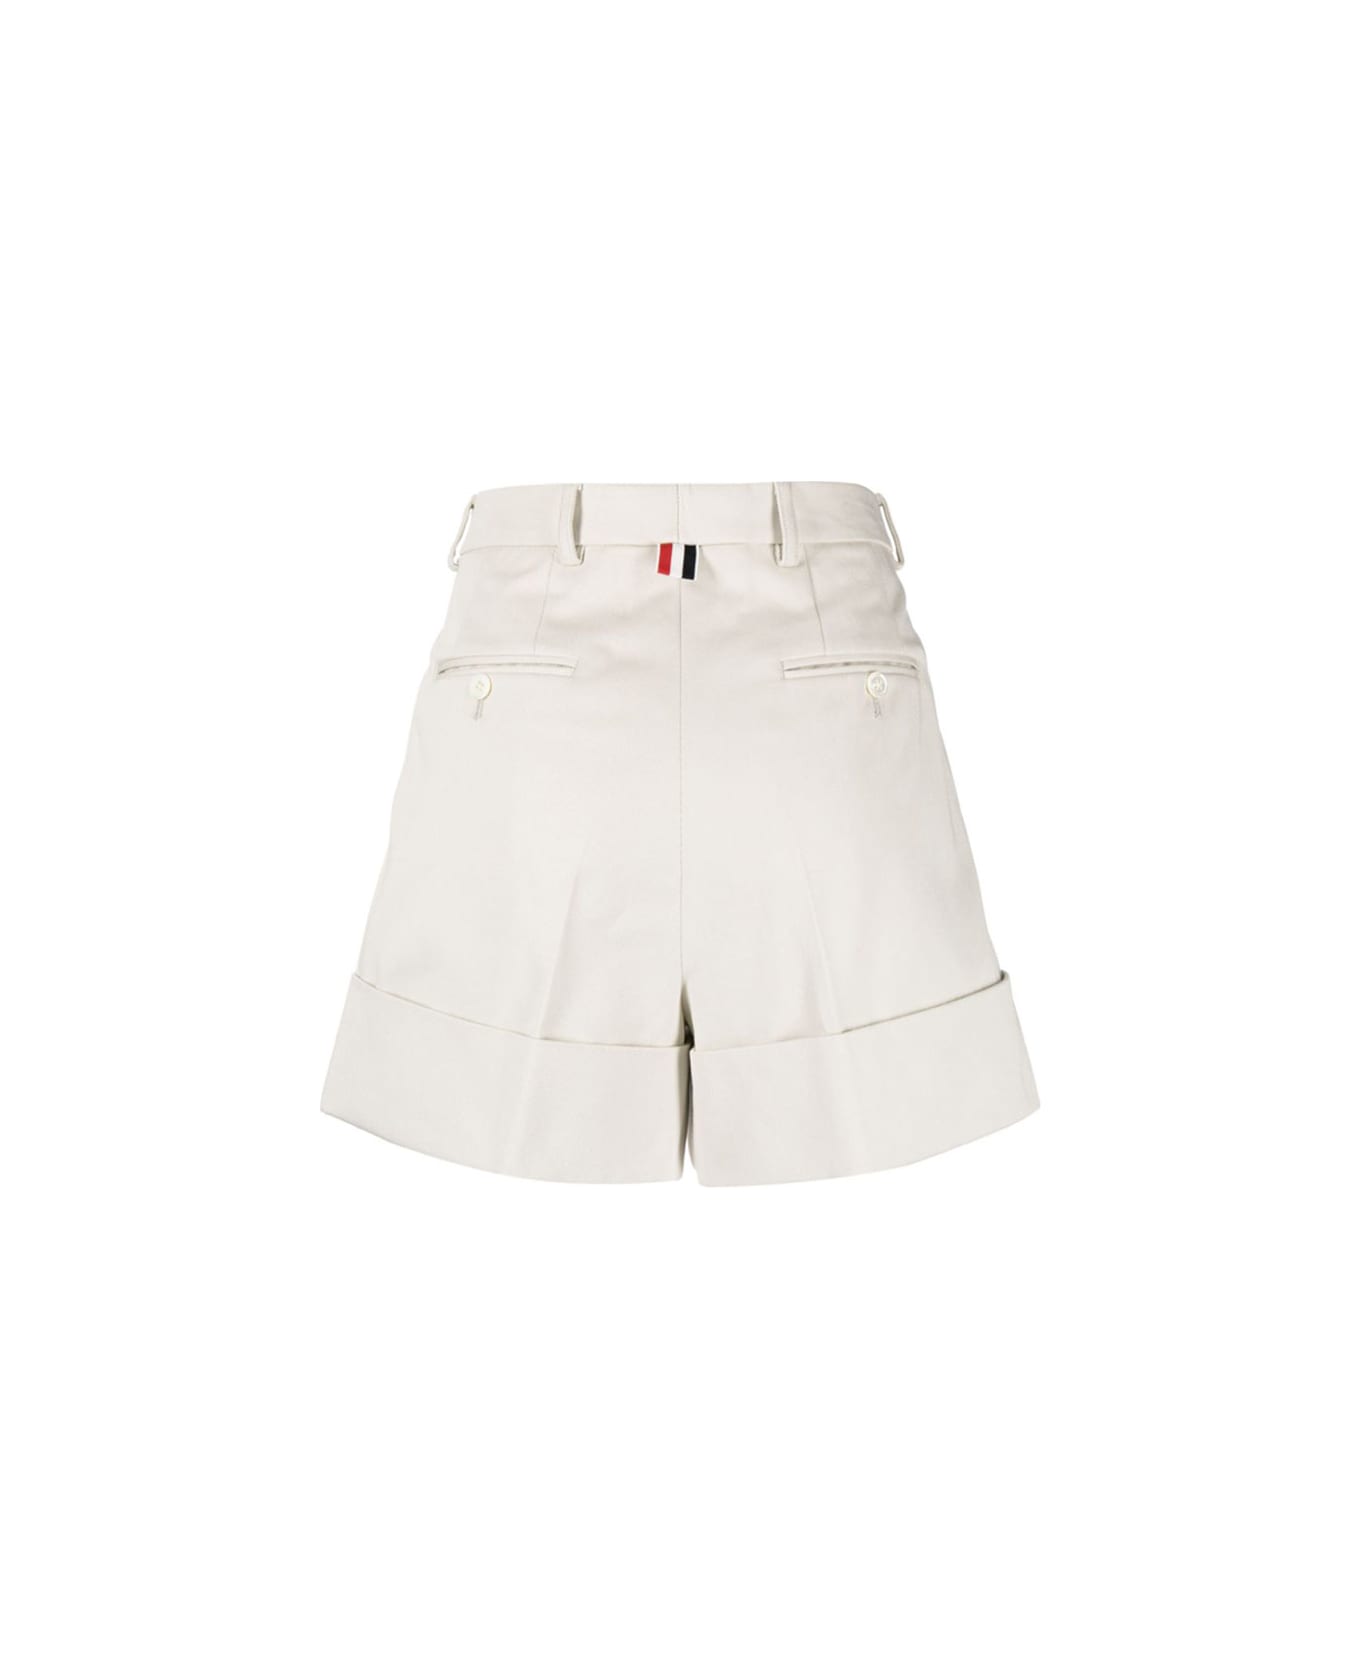 Thom Browne White Cotton Shorts - NATURAL WHITE